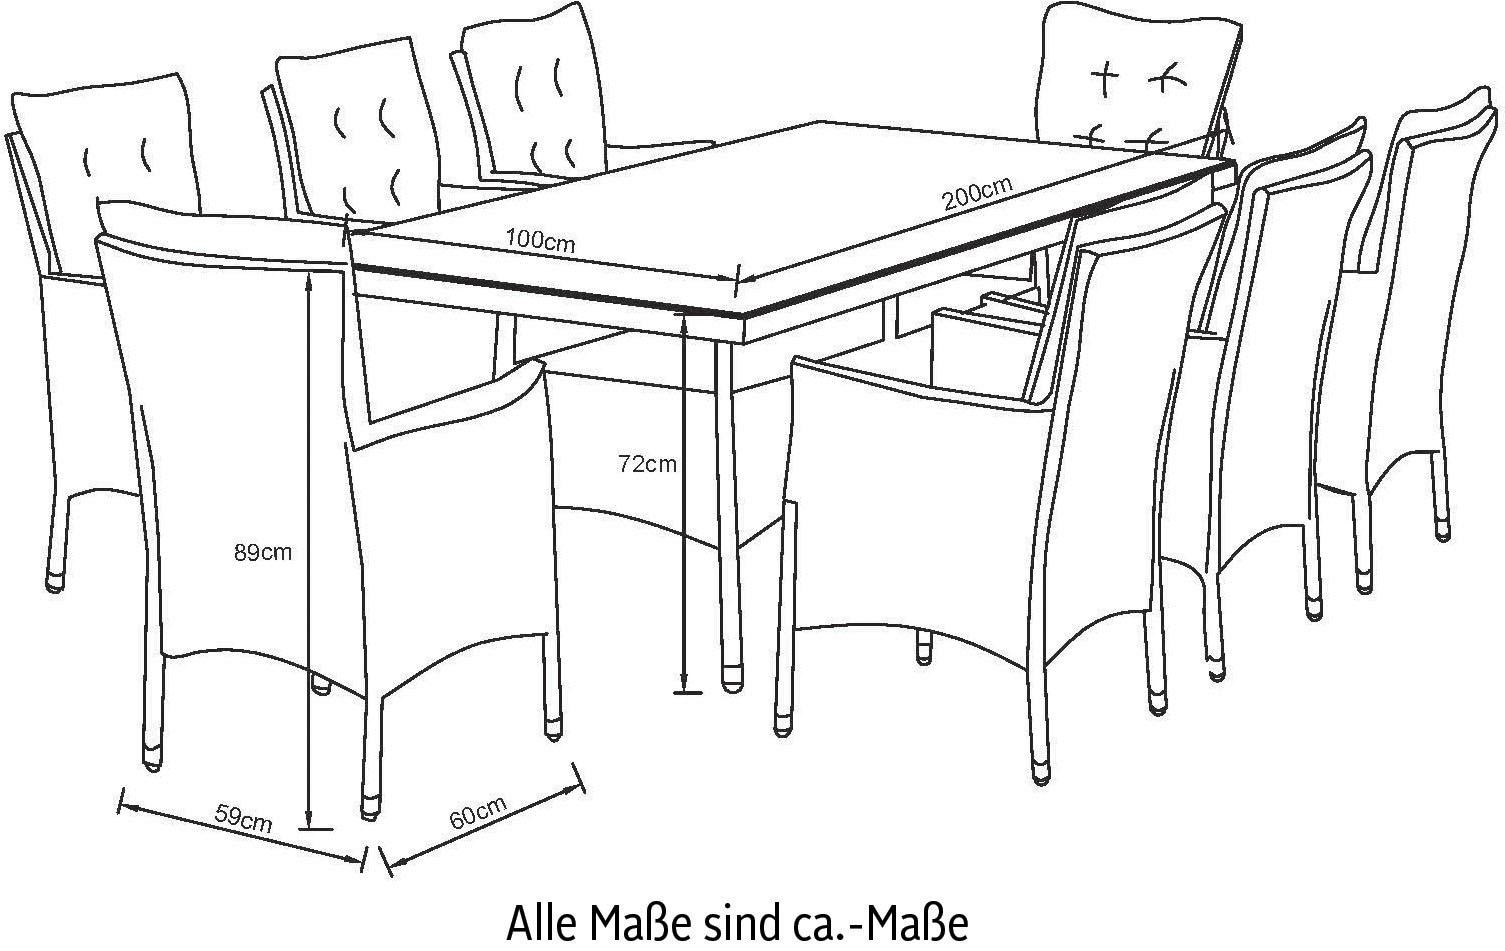 KONIFERA Garten-Essgruppe »Mailand«, (25 tlg.), 8 Sessel, Tisch 200x100 cm, Polyrattan. Gratis-Zugabe: 1 Schutzhülle